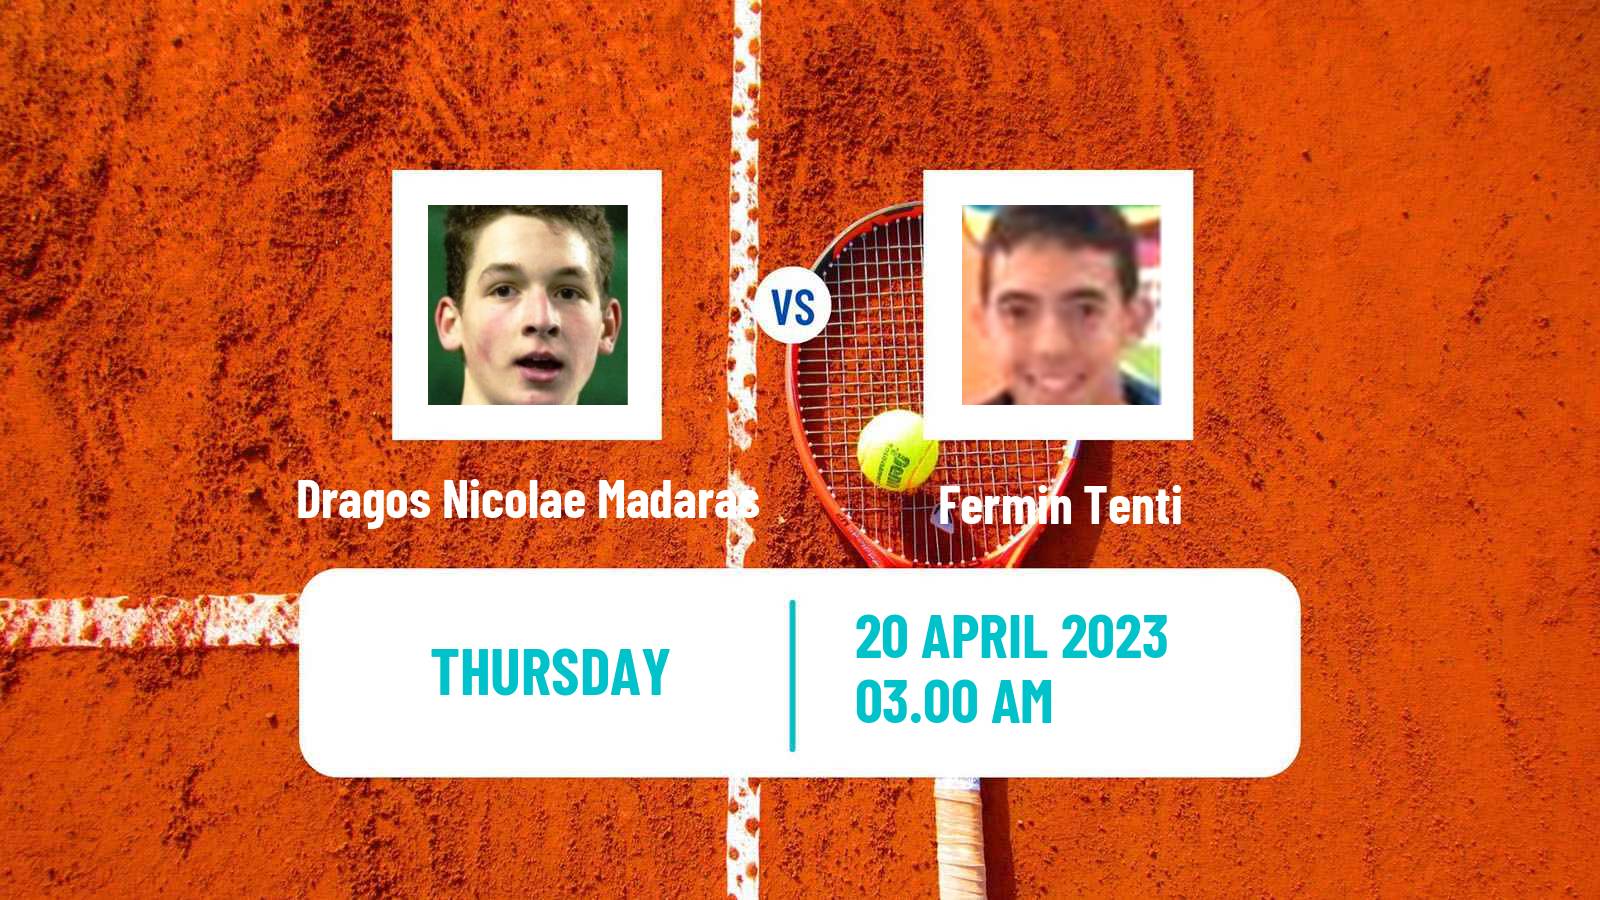 Tennis ITF Tournaments Dragos Nicolae Madaras - Fermin Tenti